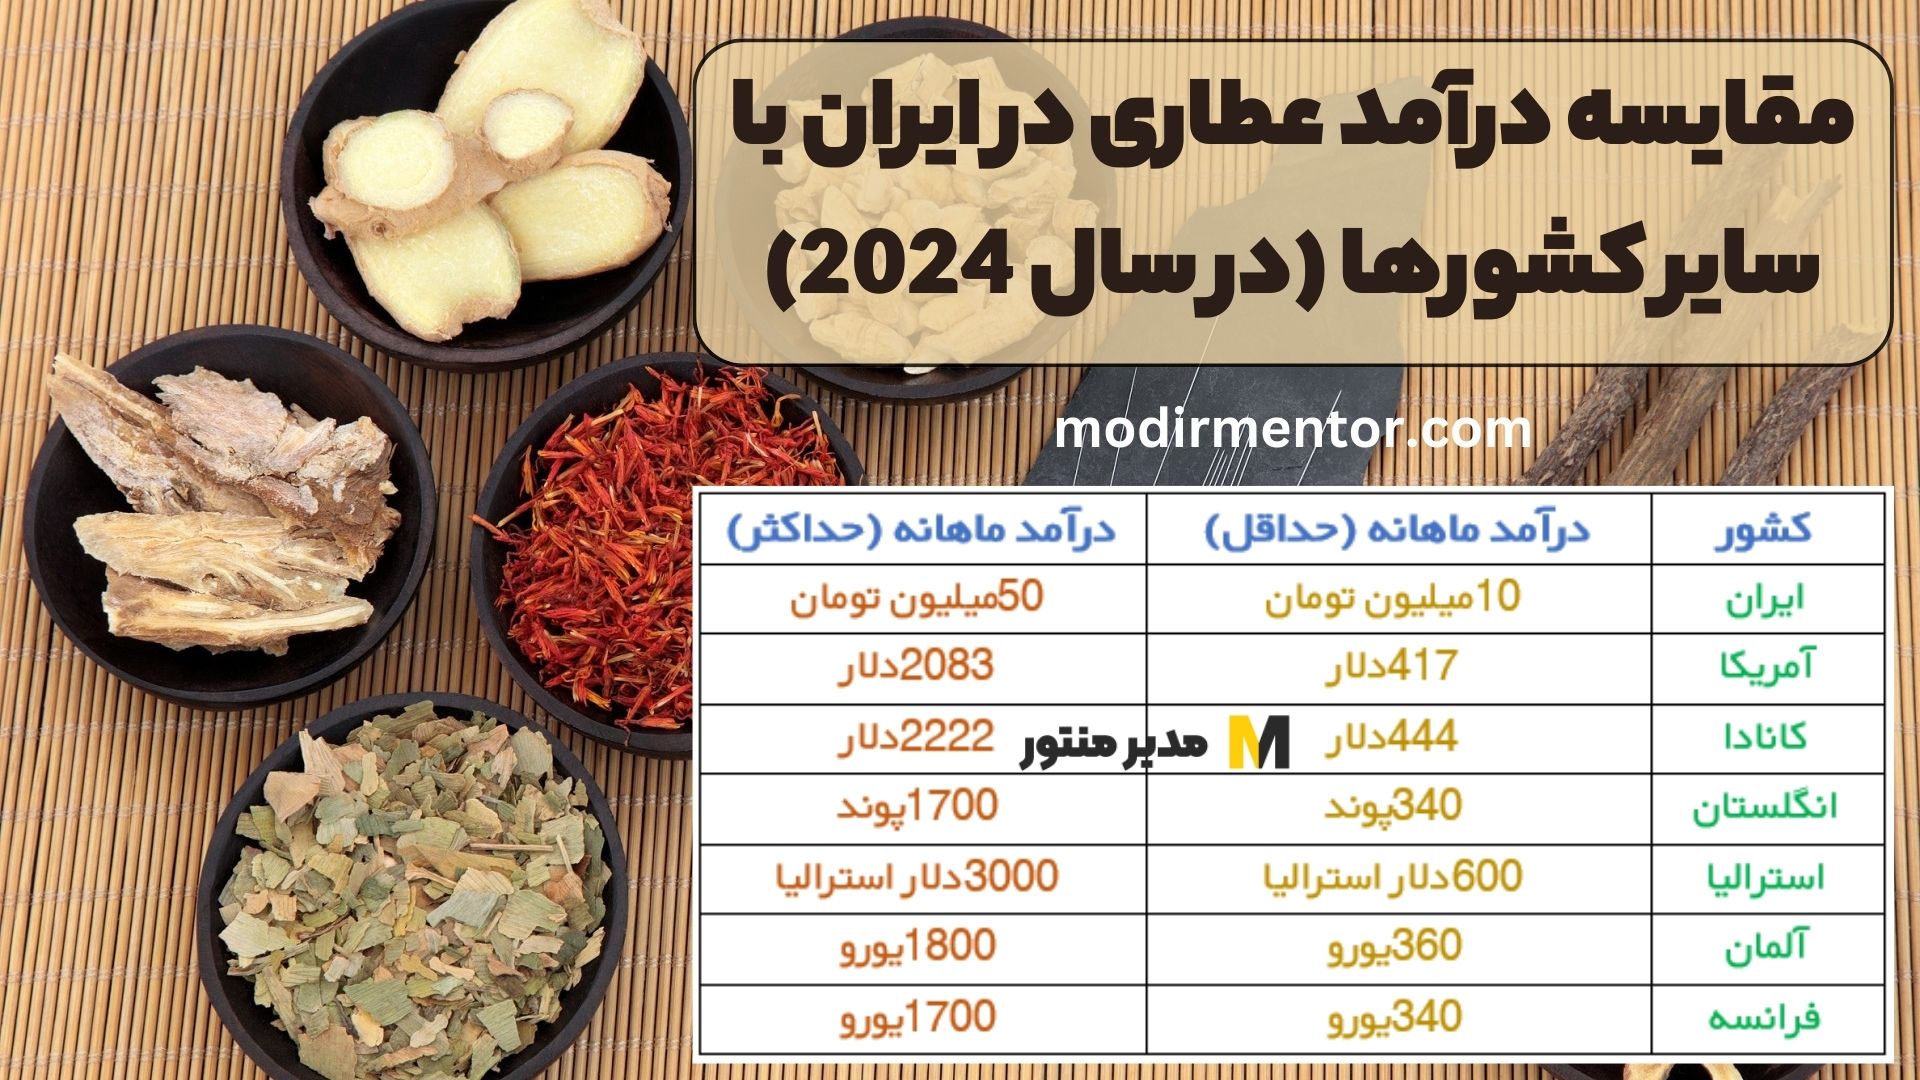 مقایسه درآمد عطاری در ایران با سایر کشورها (در سال 2024)